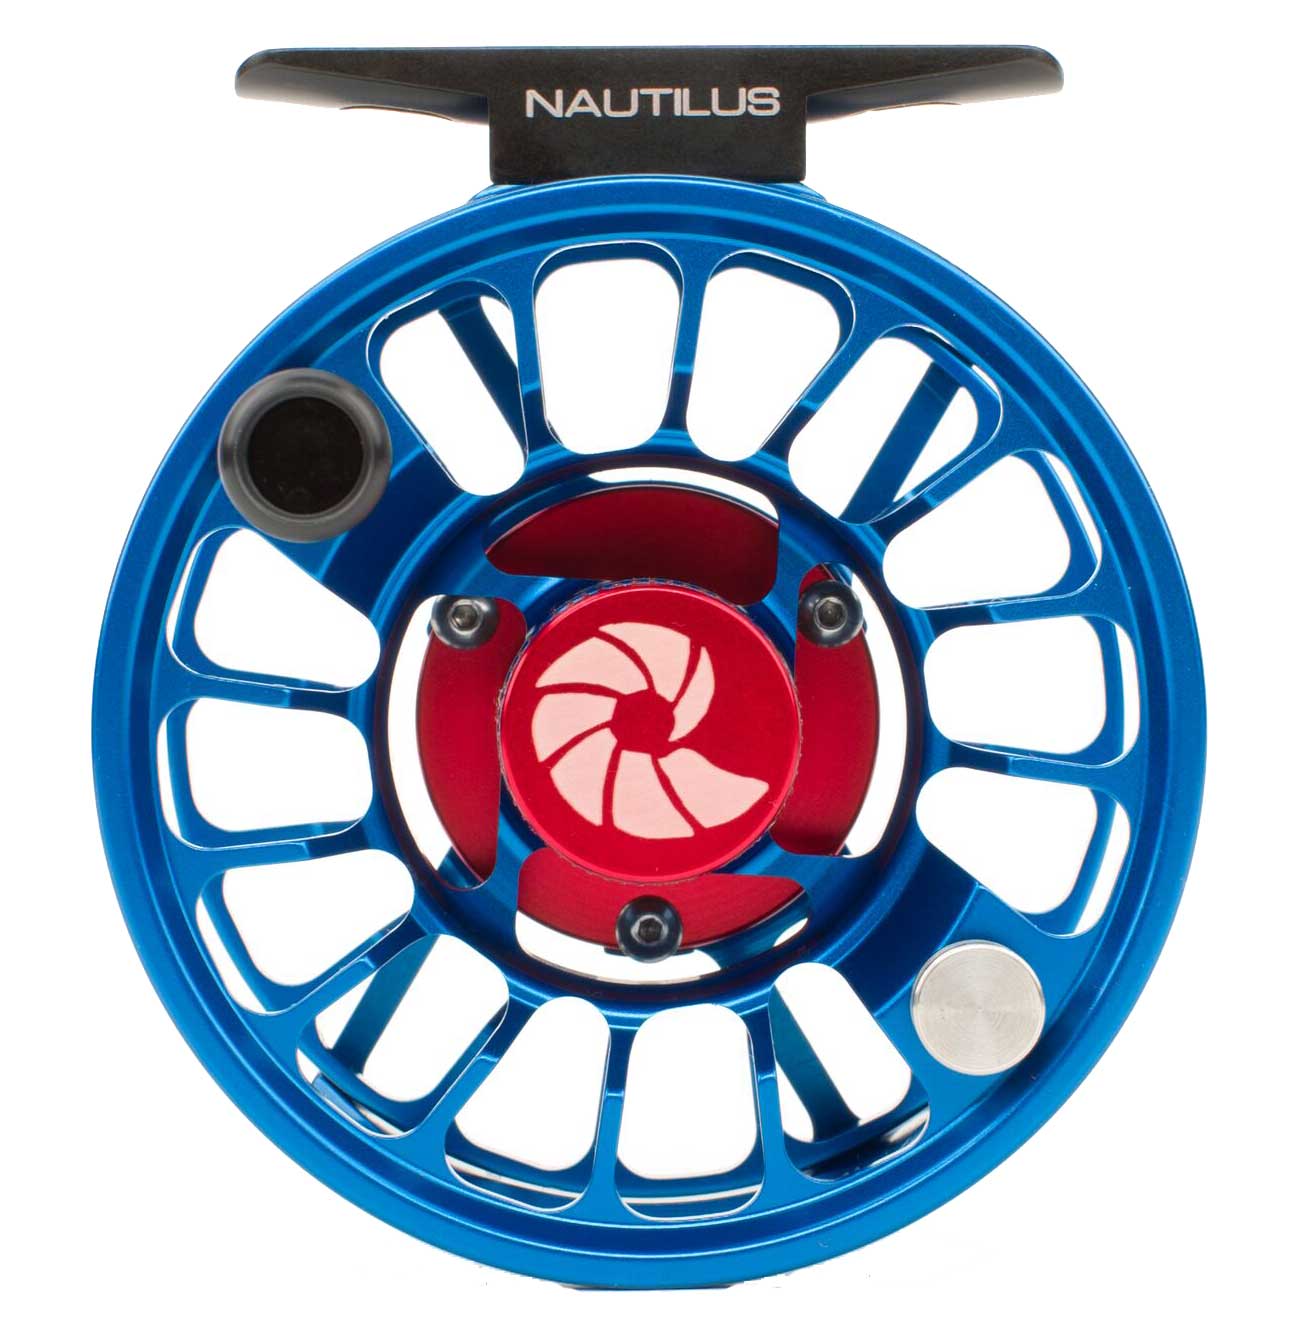 Nautilus X-Series XM Reel Titanium